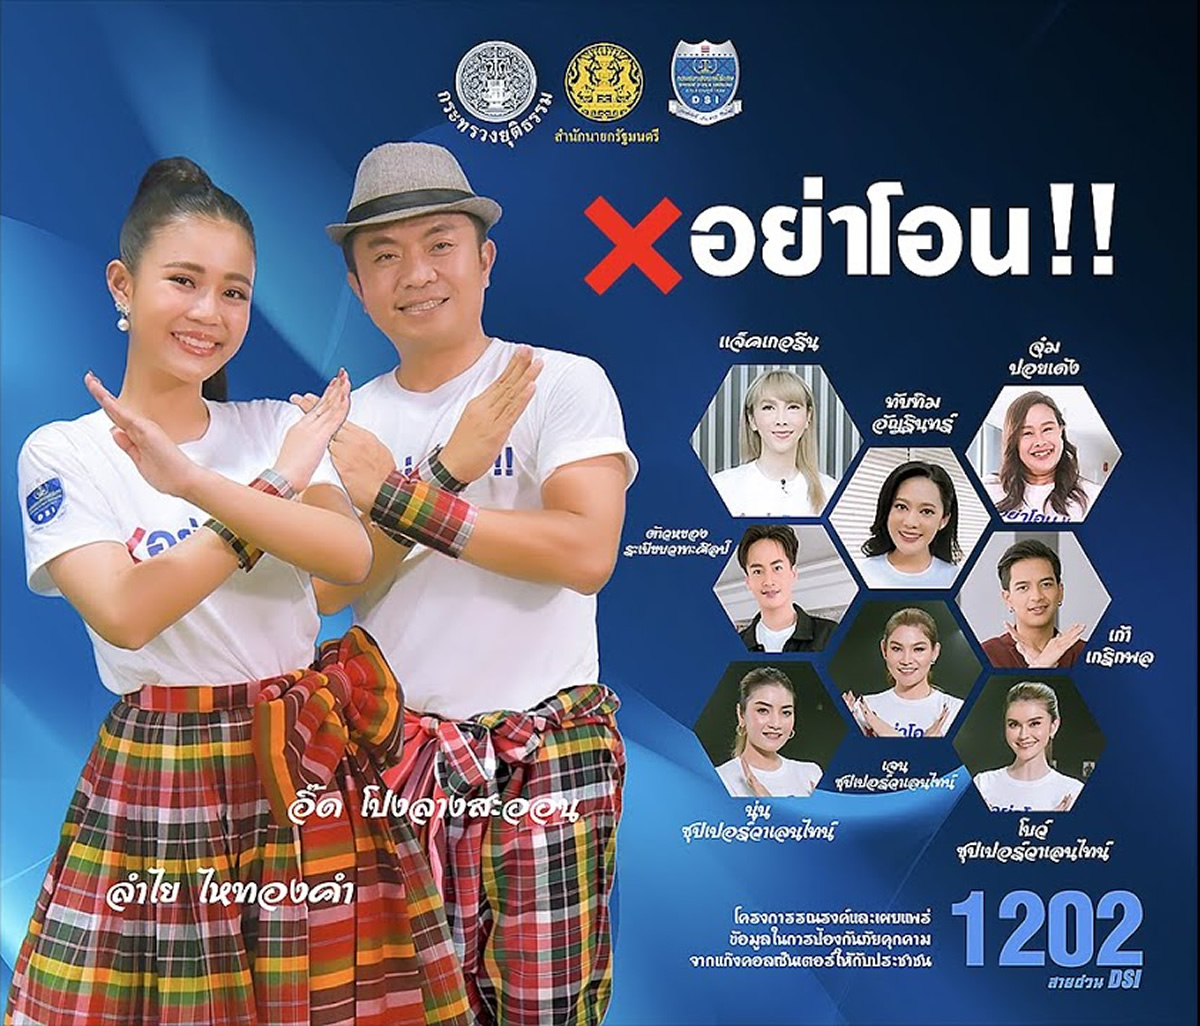 タイで振り込め詐欺の被害が多発、特別捜査局は歌って踊って注意喚起